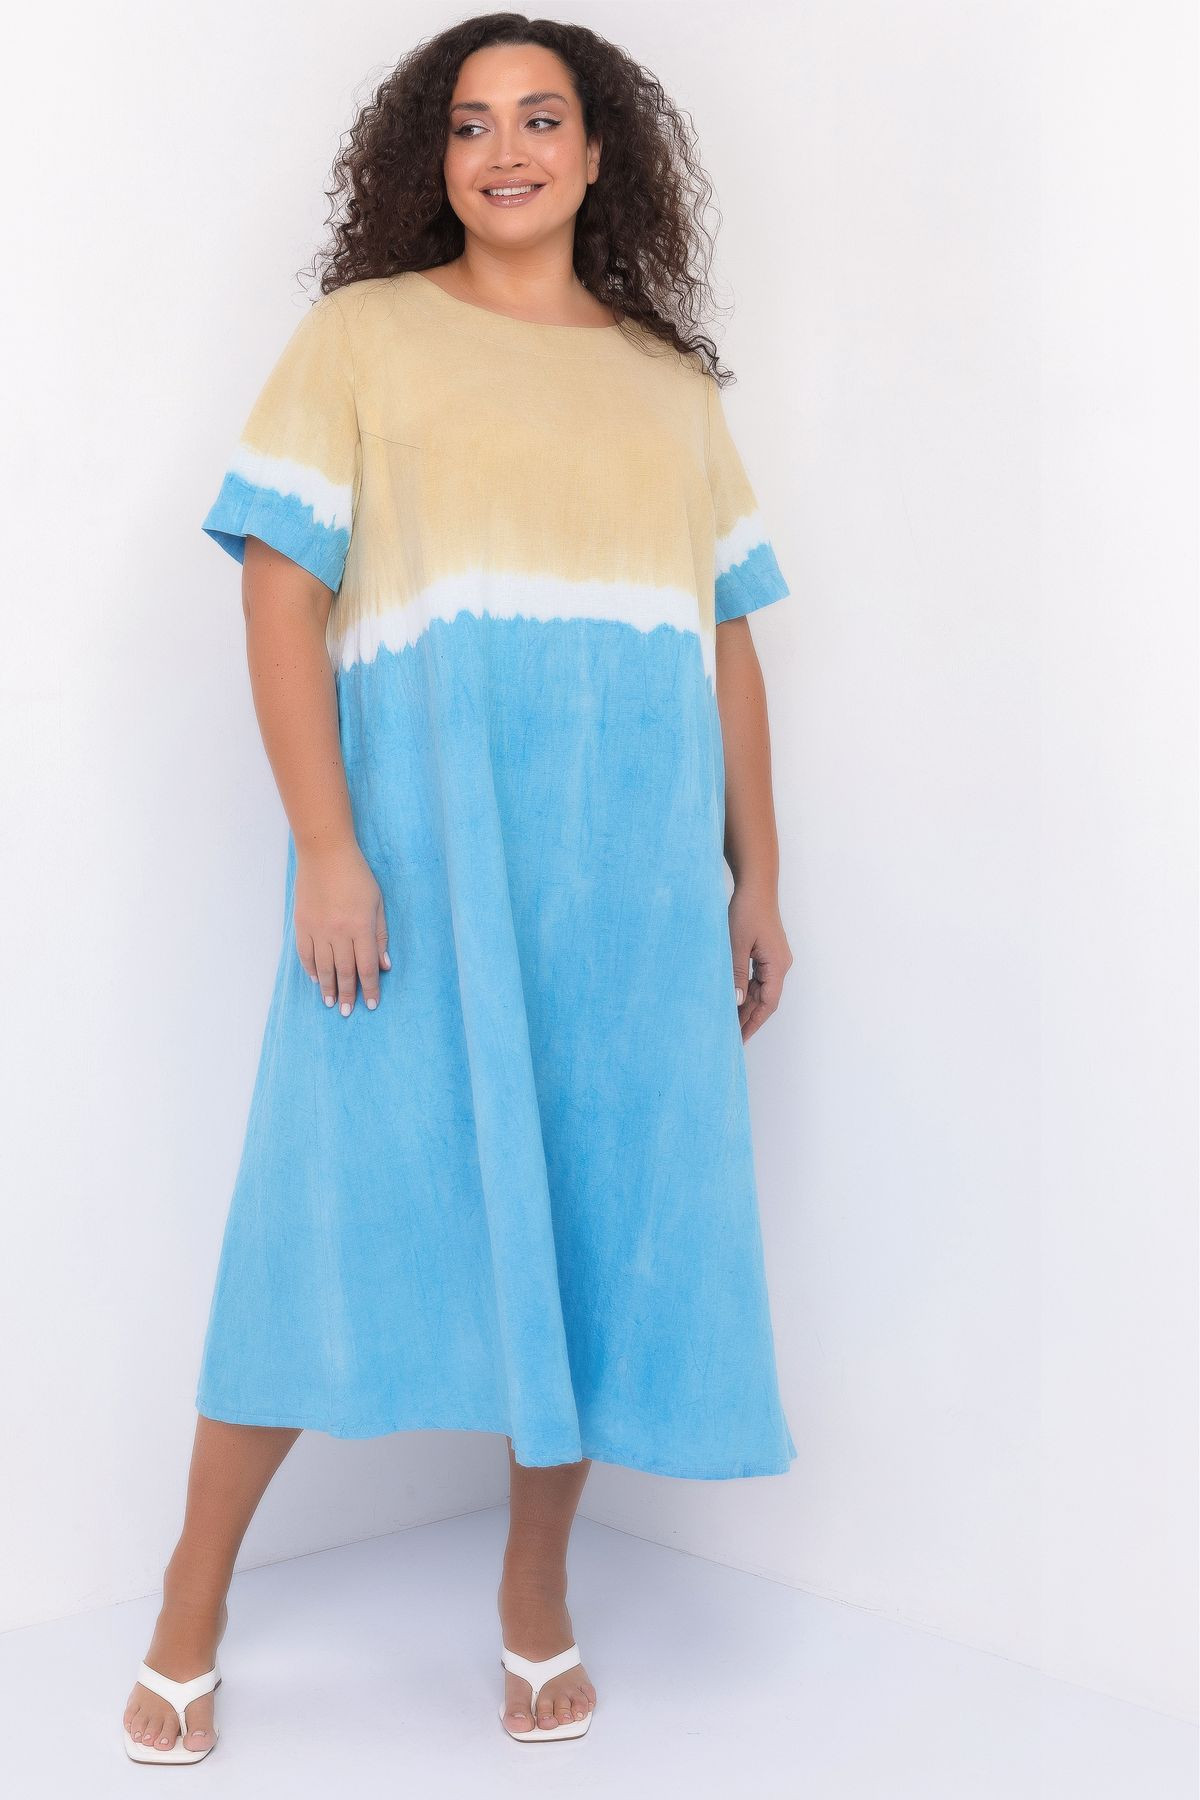 Льняные платья и сарафаны. Купить авторские женские платья из льна в интернет магазине Shantima